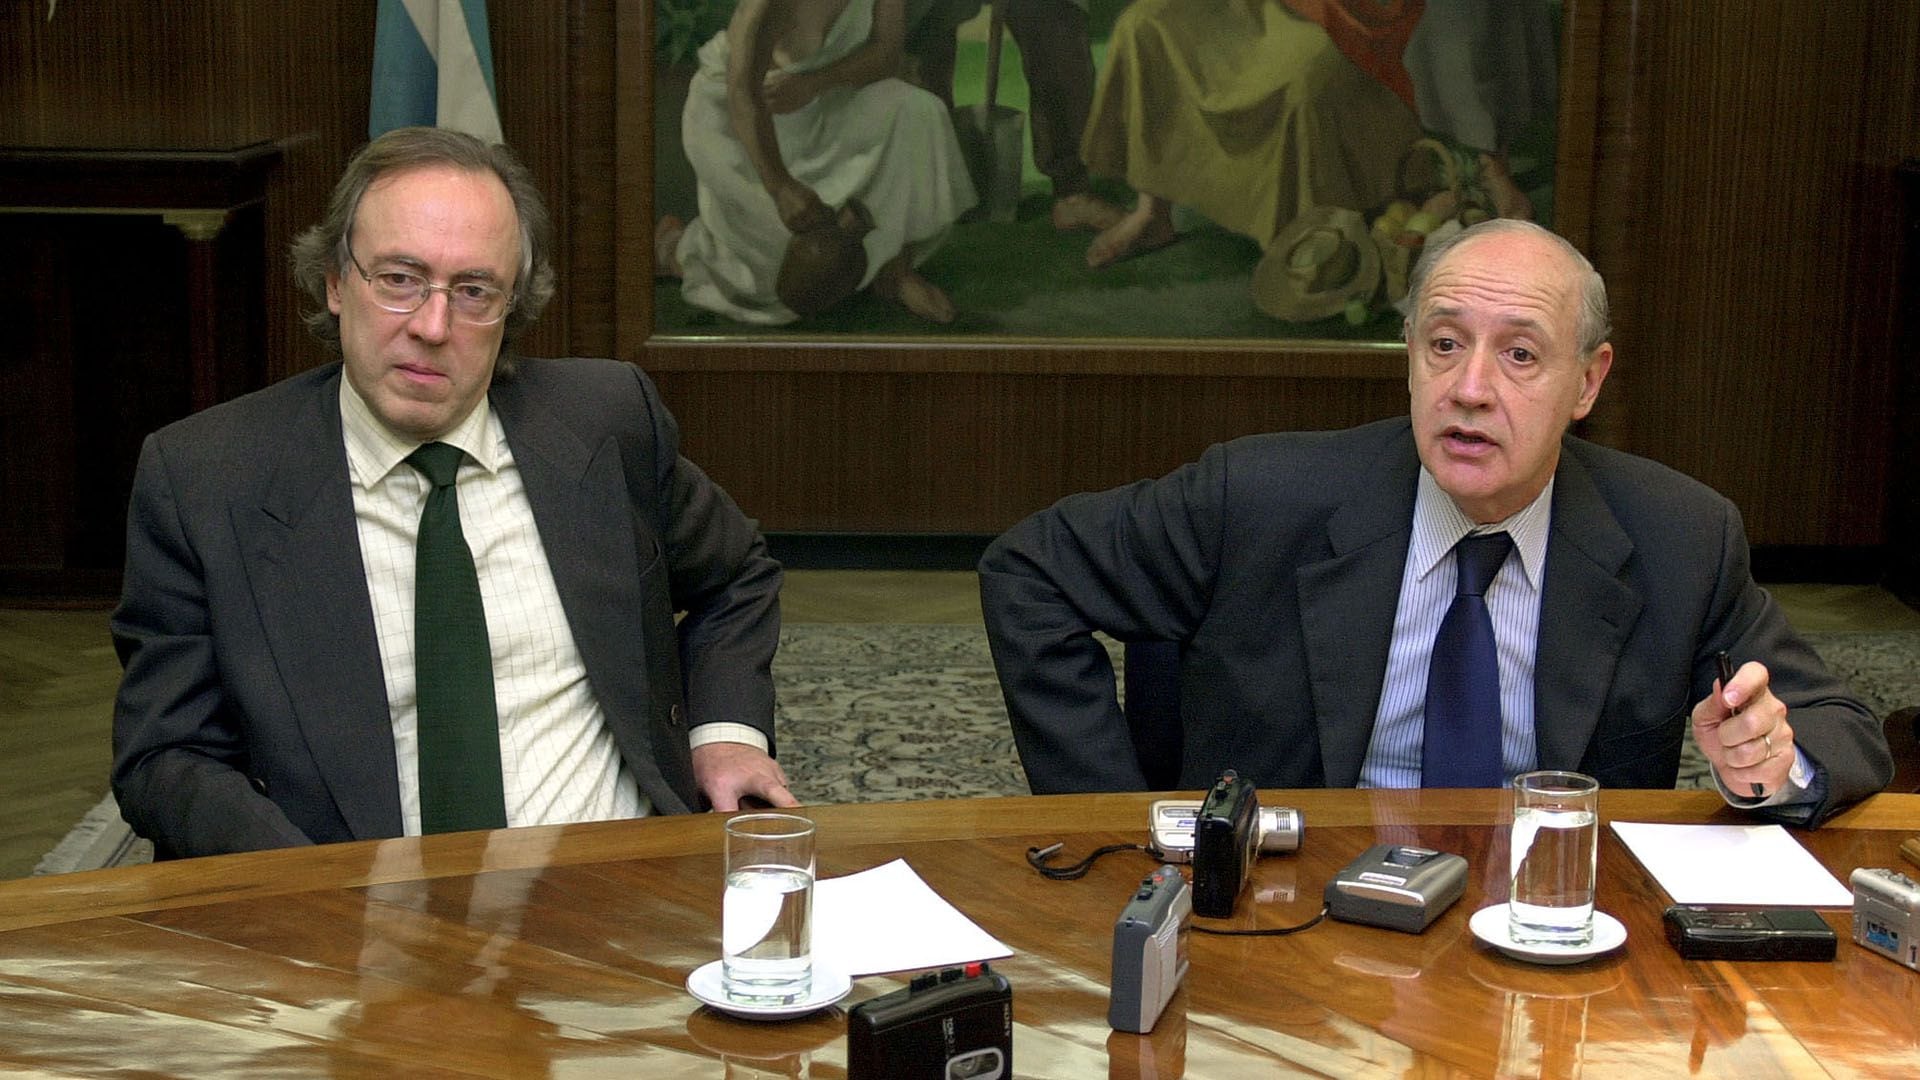 El ministro de Economia Roberto Lavagna junto al secretario de finanzas Guillermo Nielsen.
NA